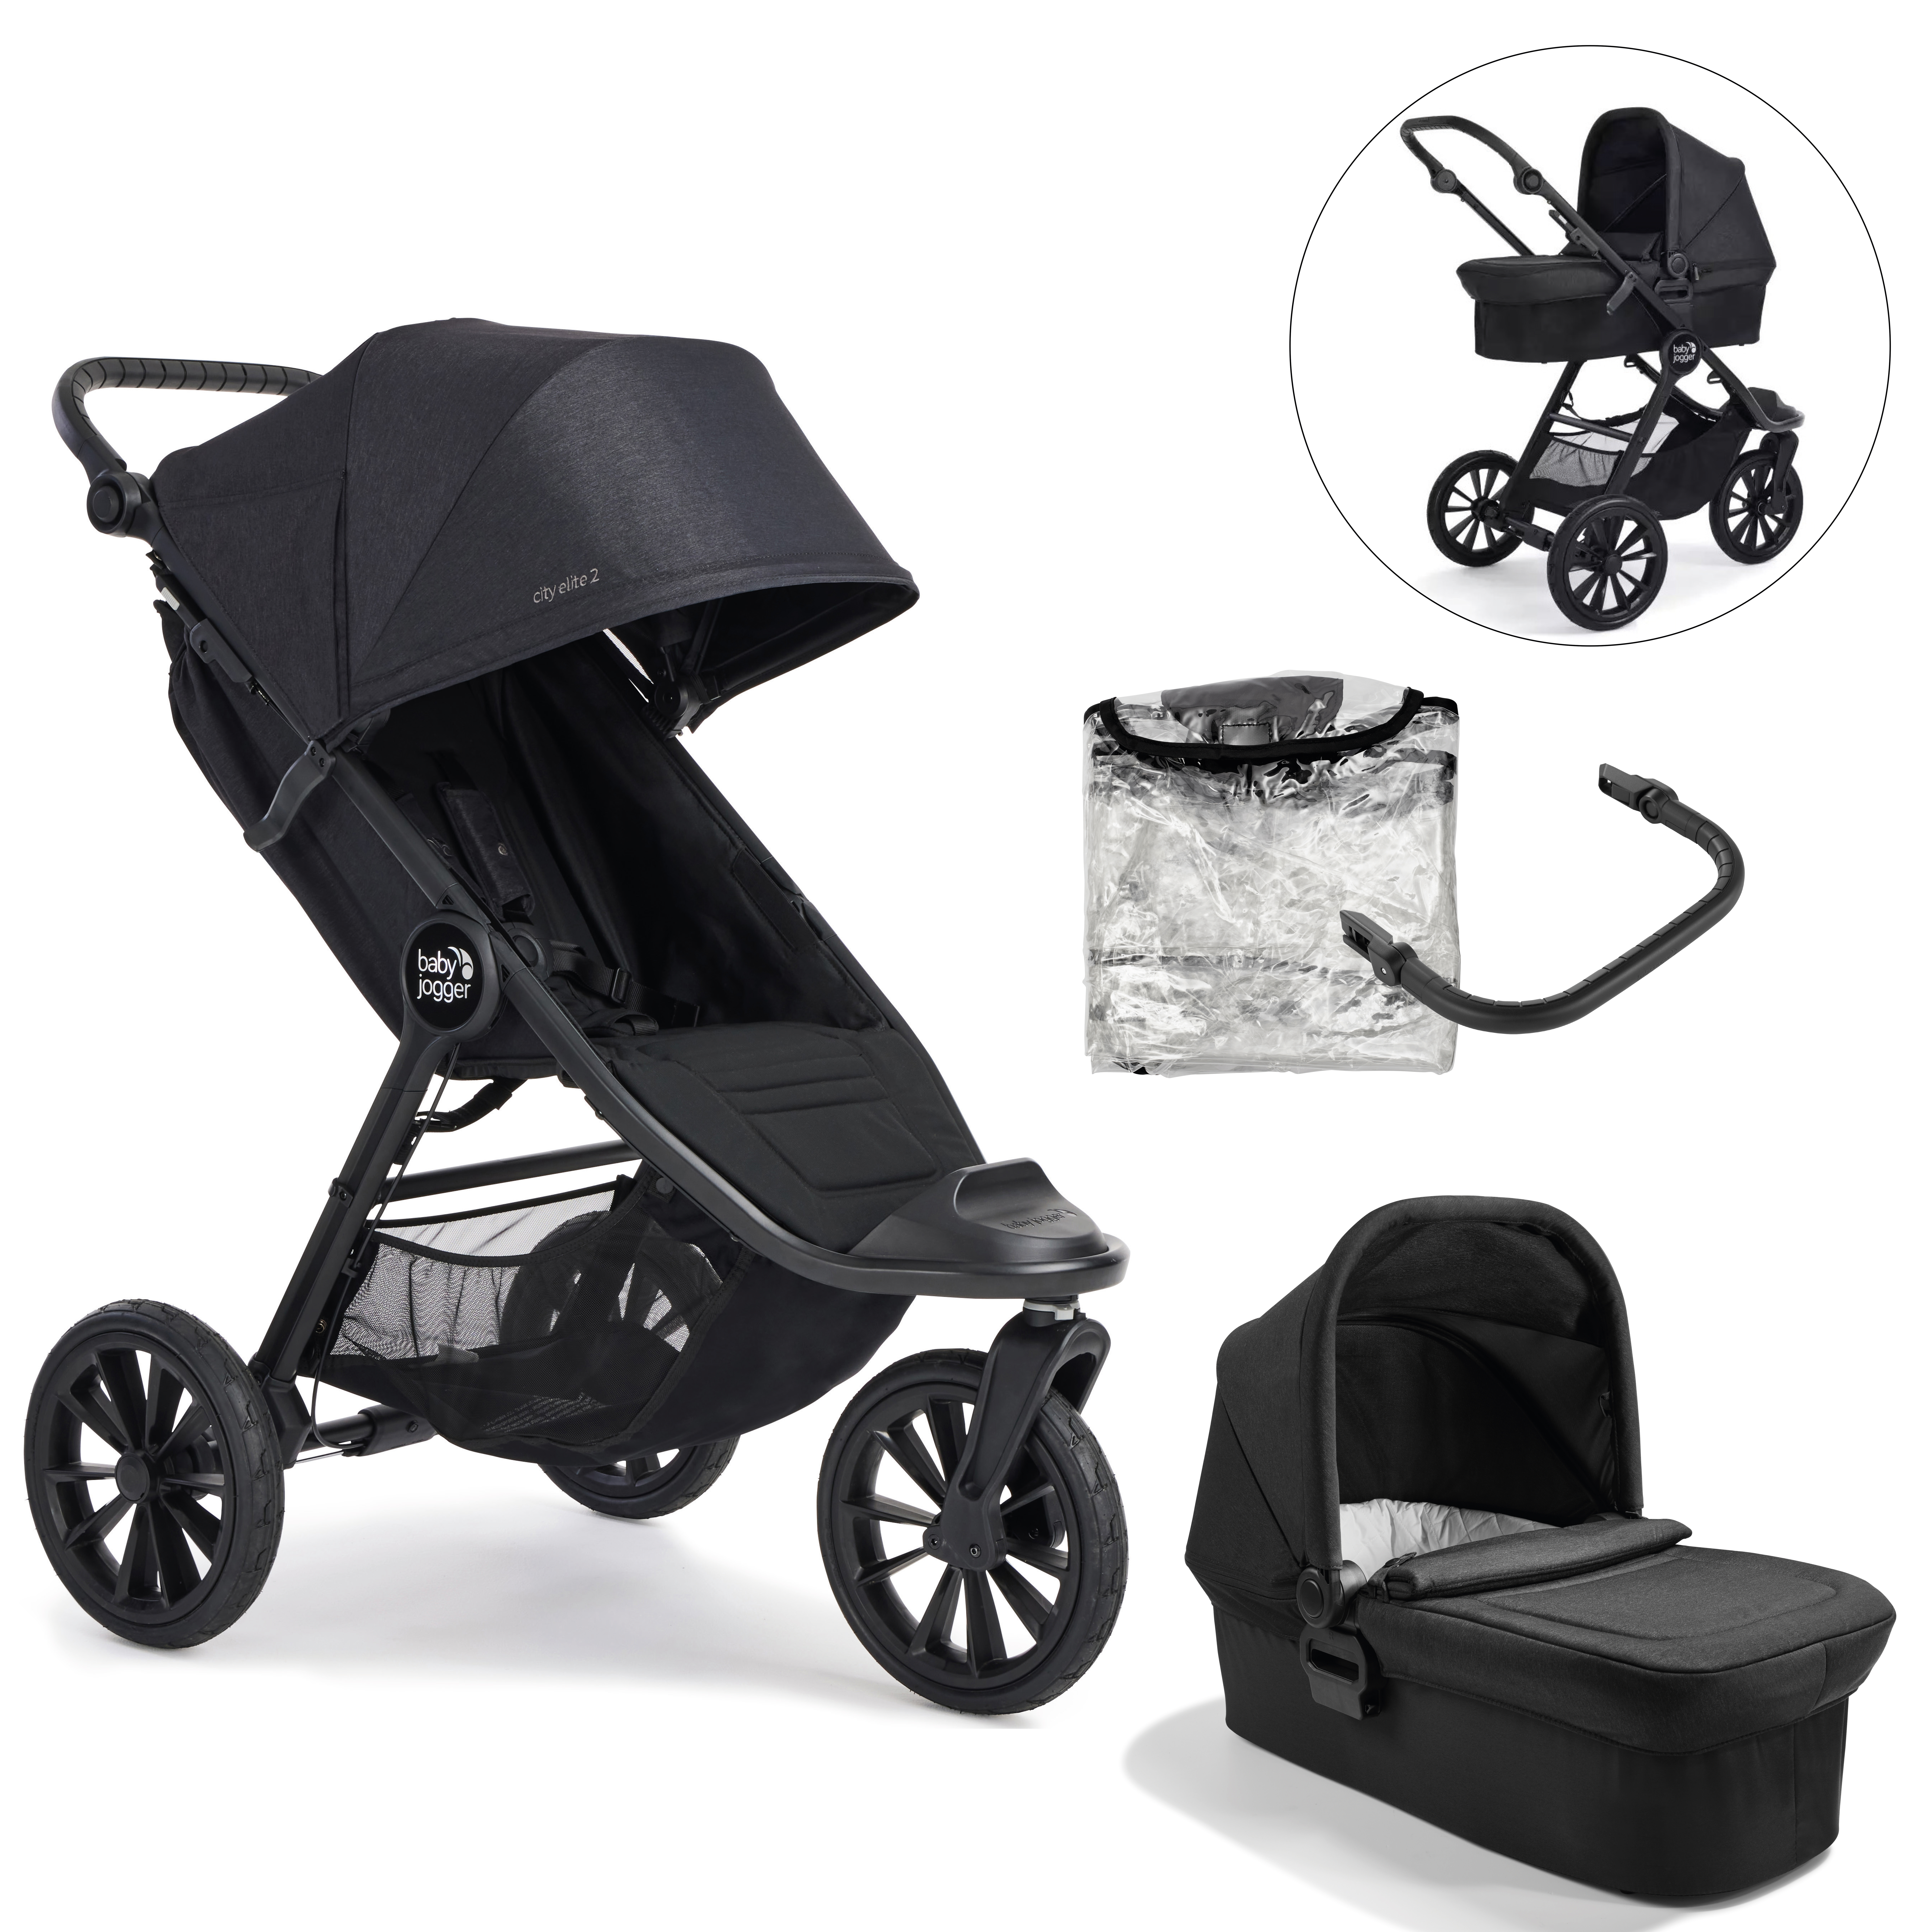 baby jogger City Elite 2 Opulent kinderwagen Black inclusief reiswieg, veiligheidsbeugel en weerbescherming